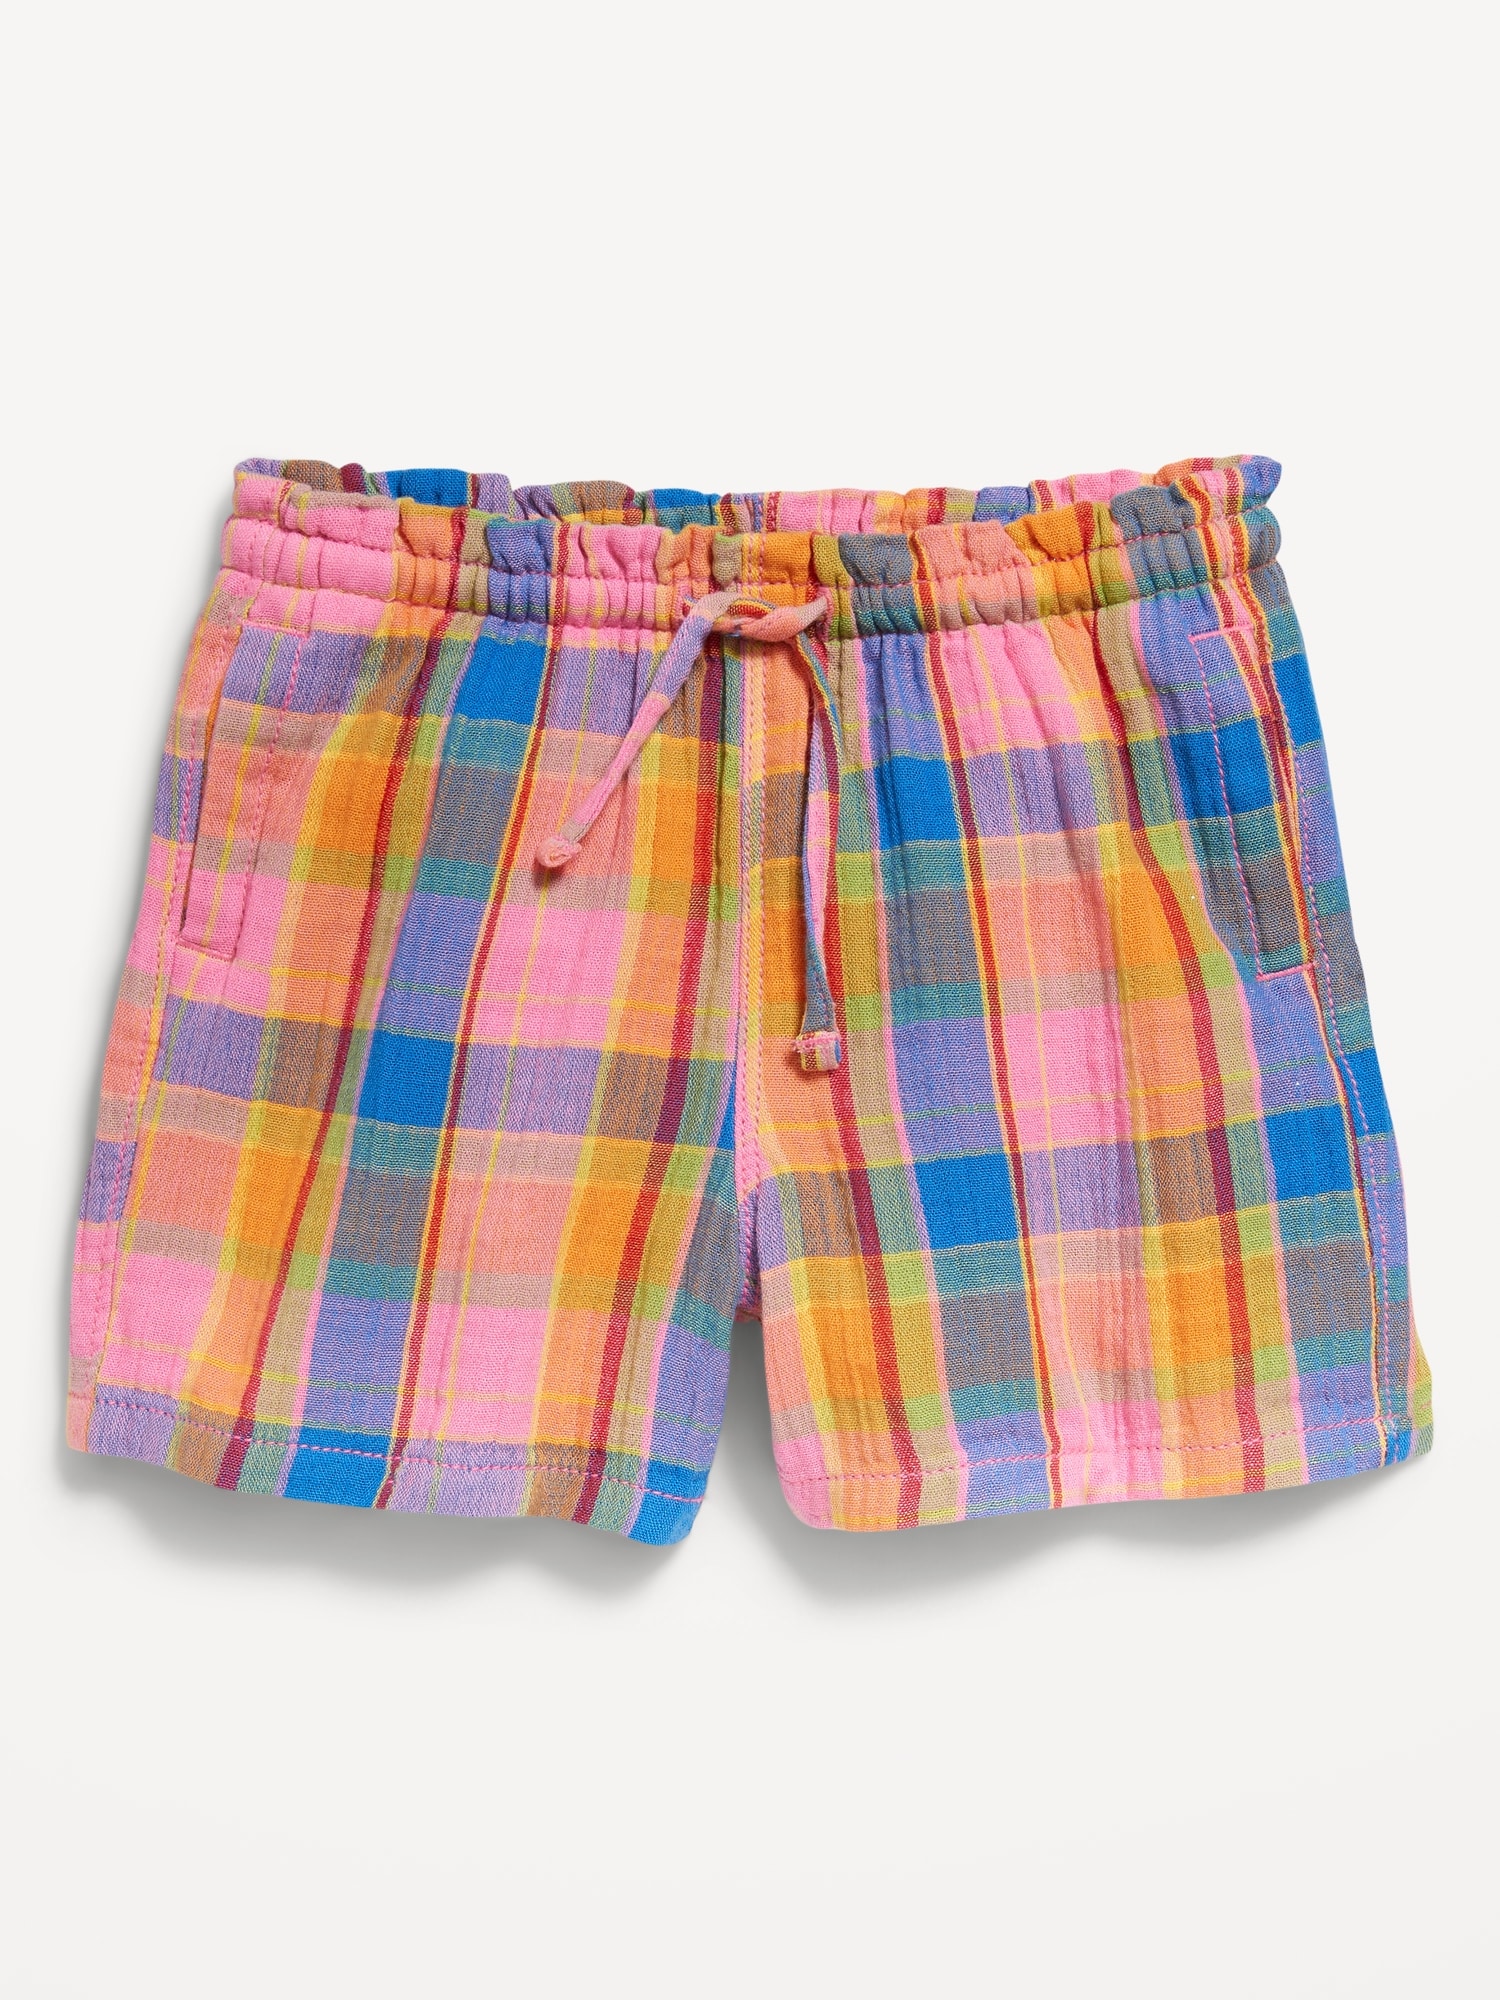 Ruffled Pull-On Shorts for Toddler Girls